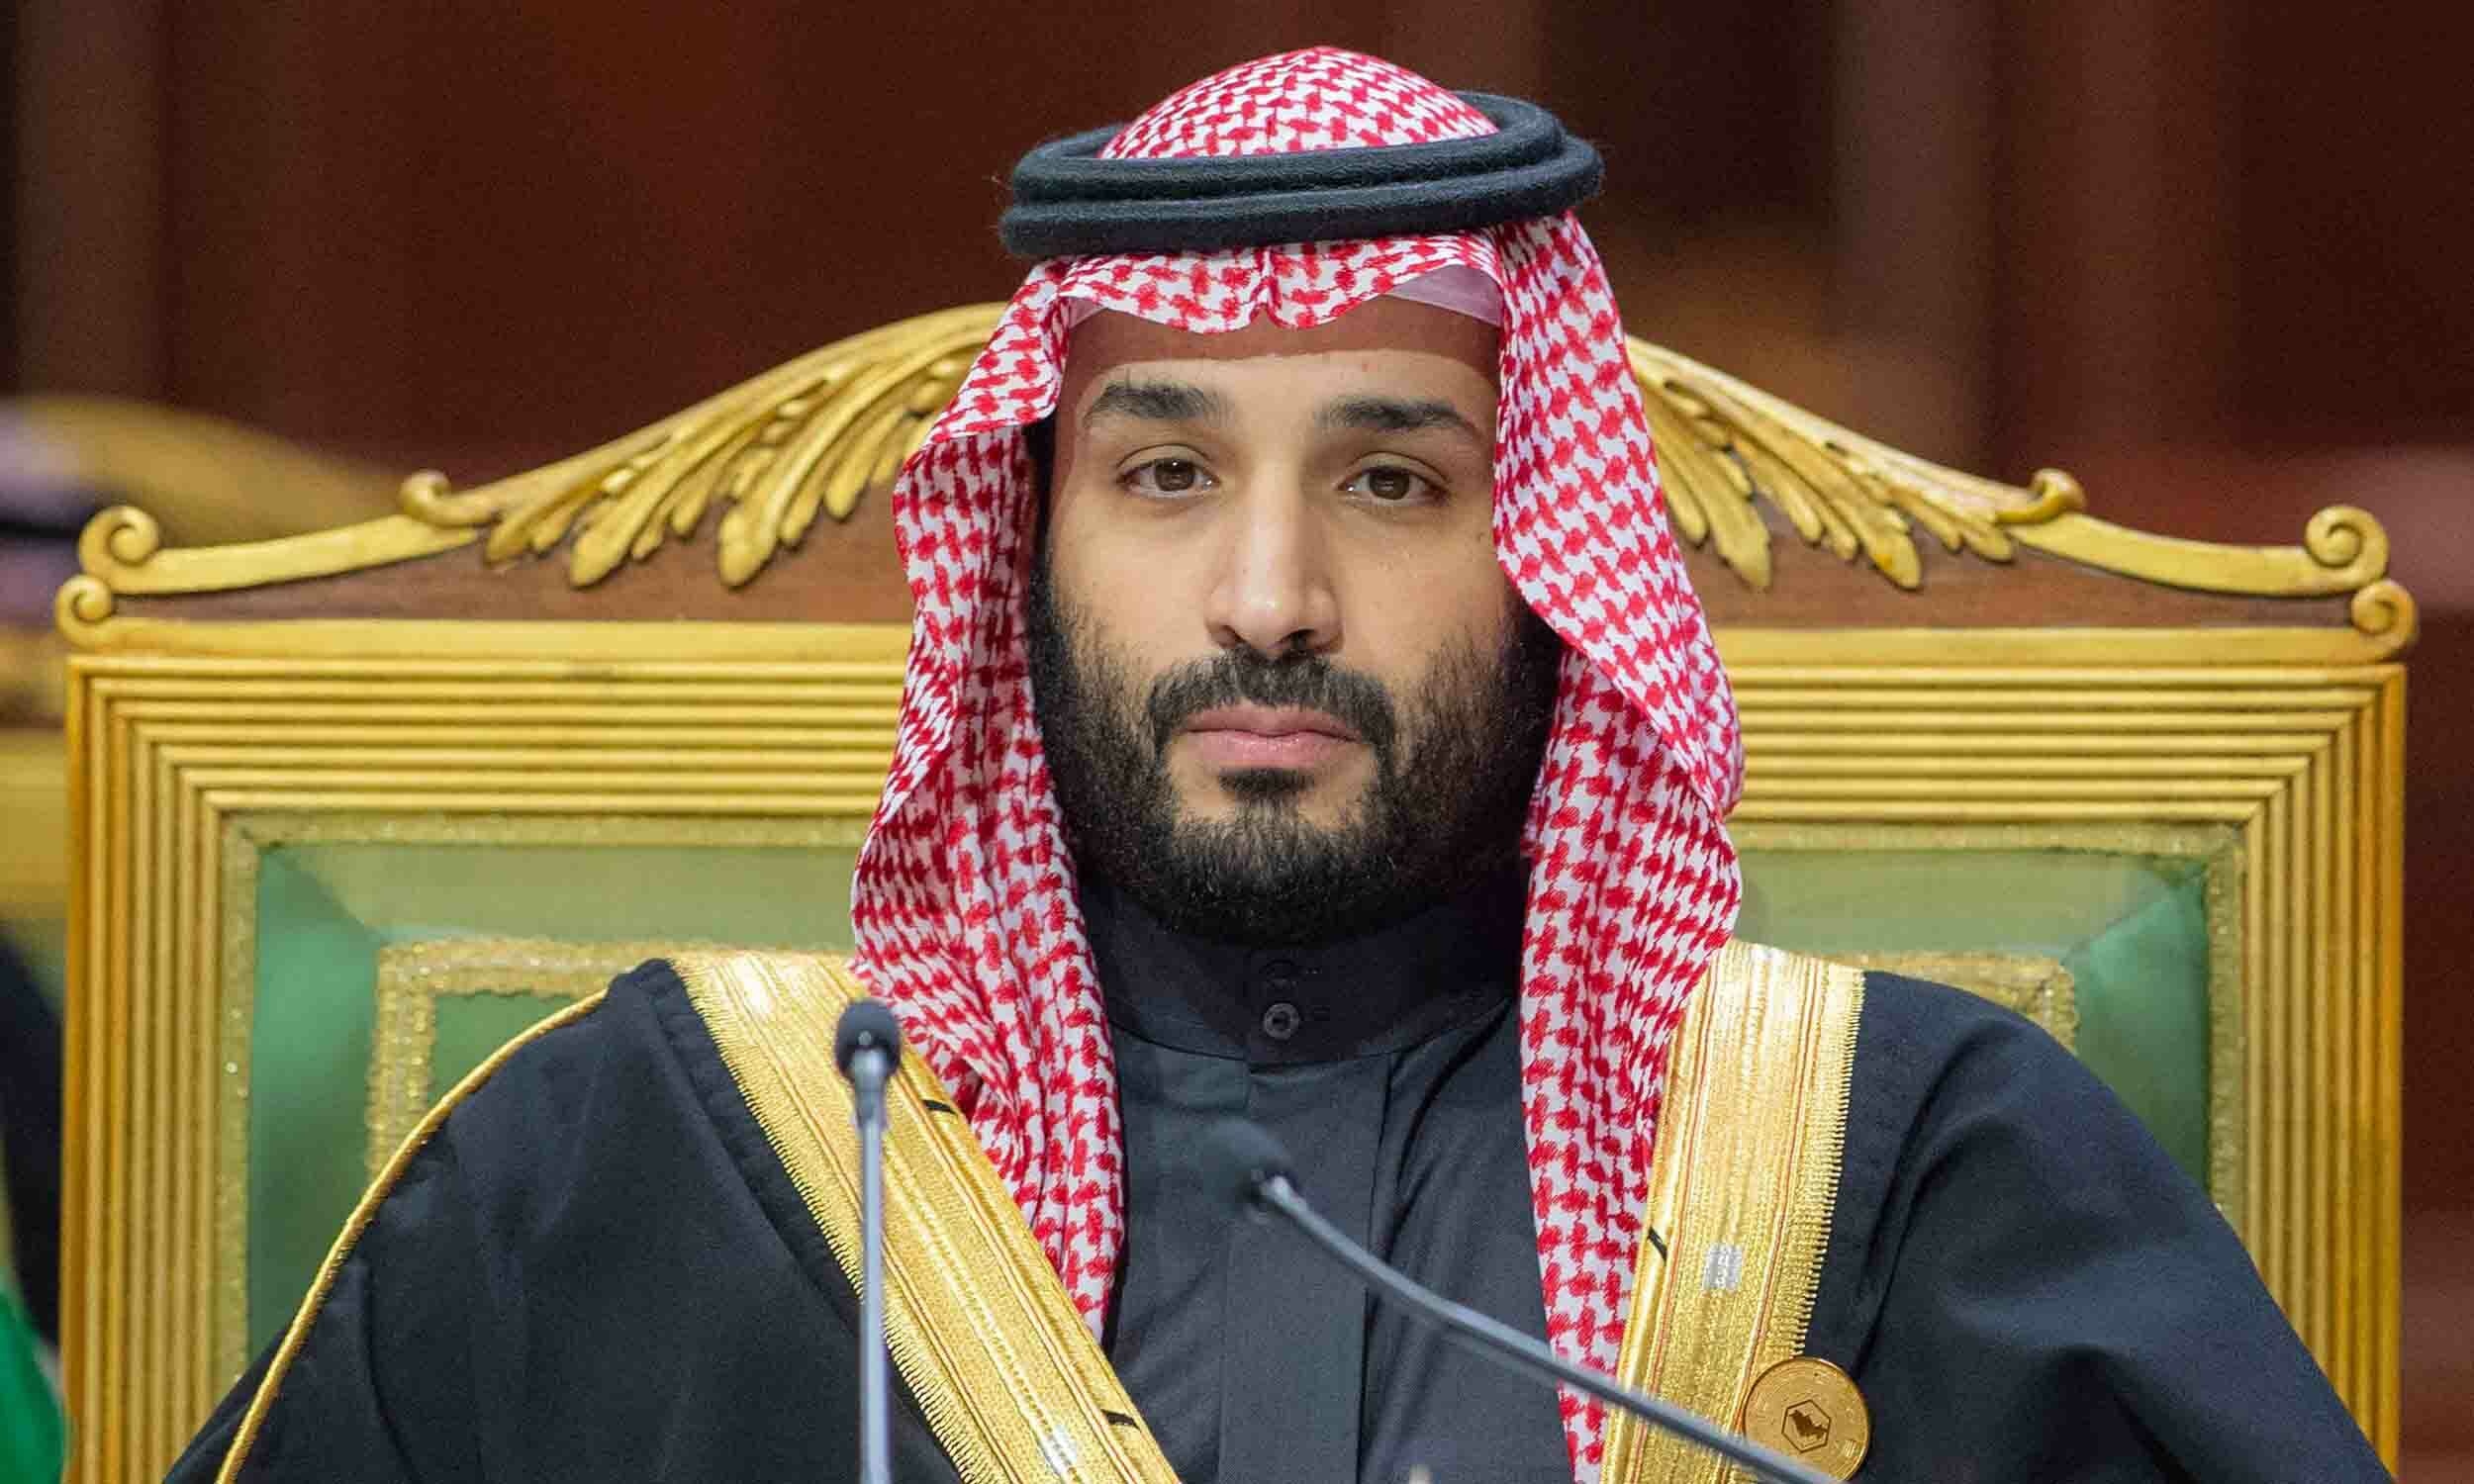 محمد بن سلمان سعودی عرب کے وزیراعظم مقرر ہوے ہے.